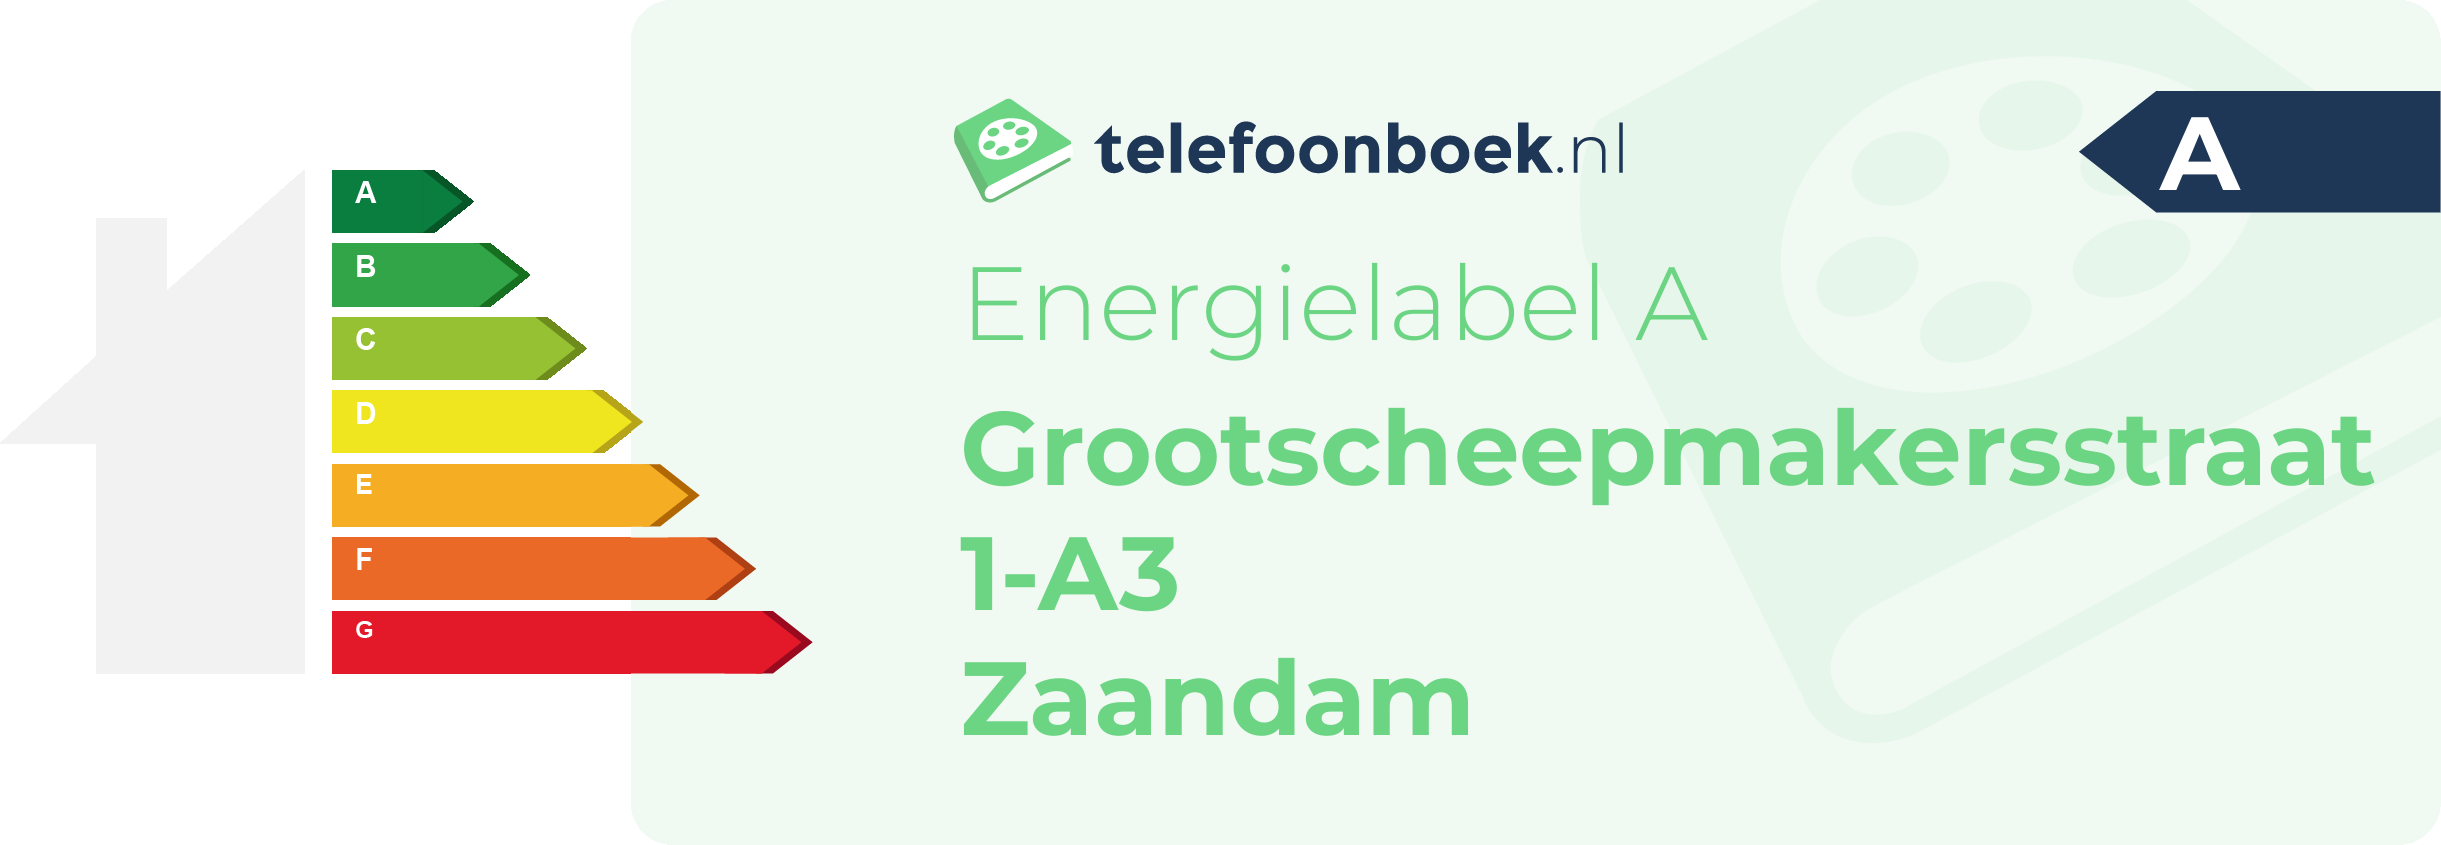 Energielabel Grootscheepmakersstraat 1-A3 Zaandam